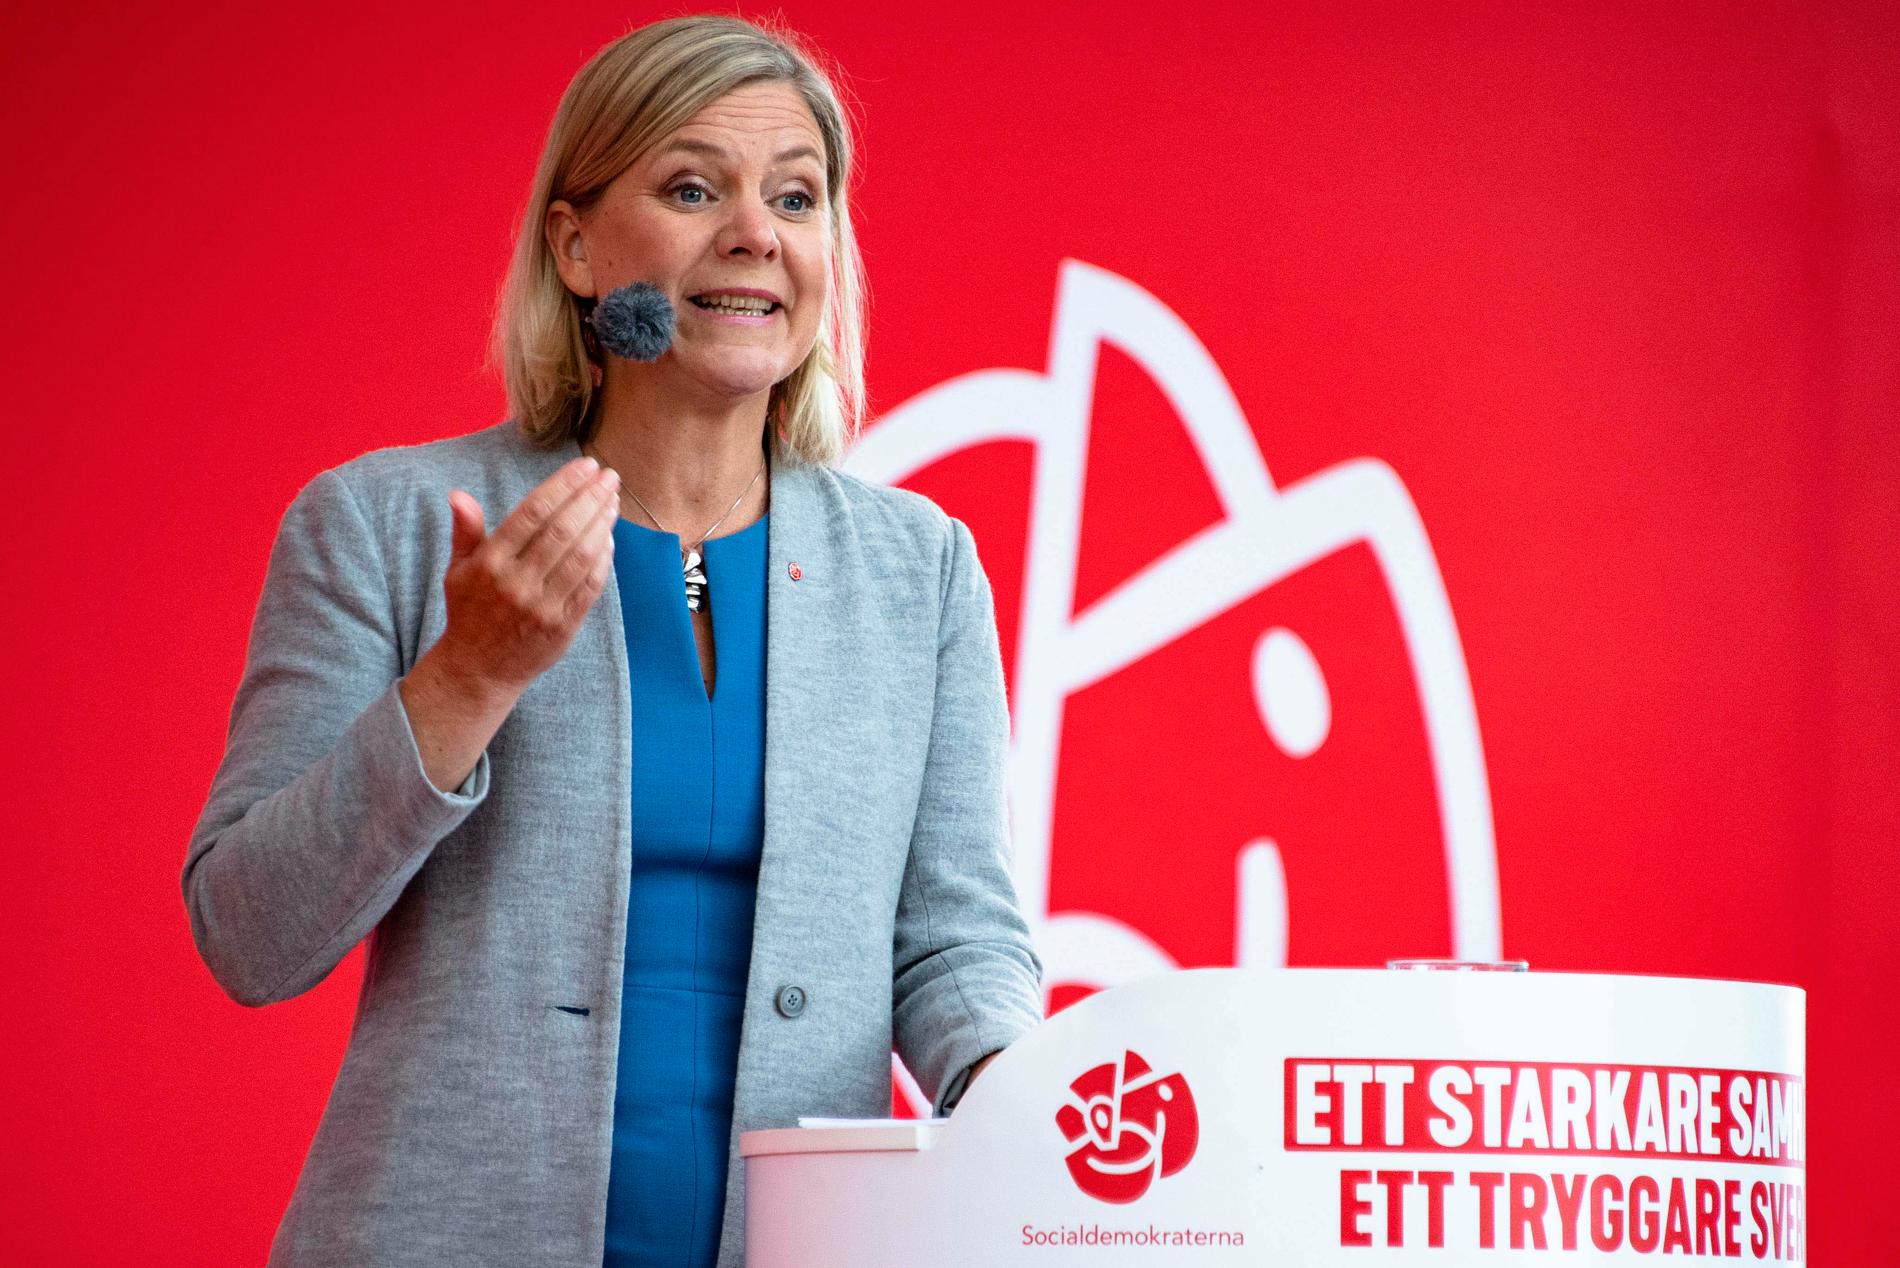 Magdalena Andersson, idag finansminister. Många tror att hon snart kan ta över ledningen av Socialdemokraterna, när Stefan Löfven lämnar.